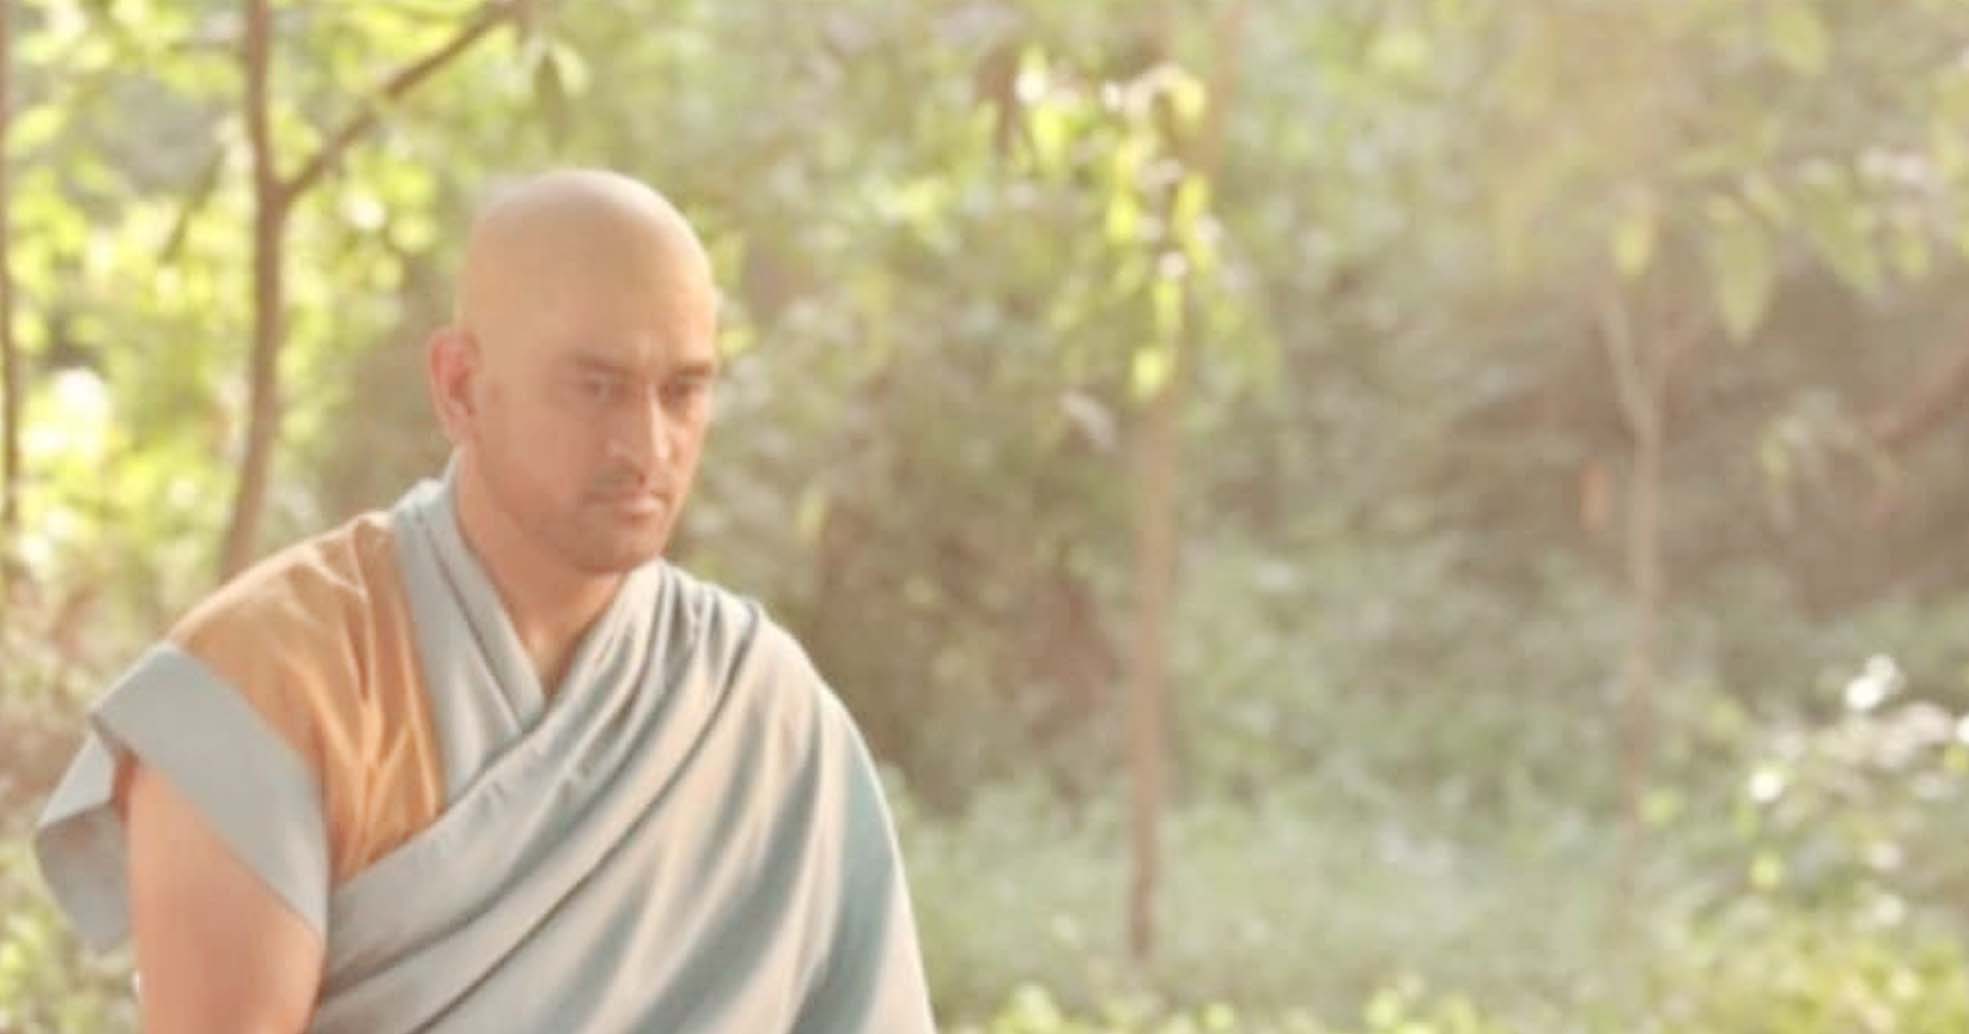 आईपीएल से पहले धोनी बौद्ध भिक्षुओं जैसे अवतार में नजर आए